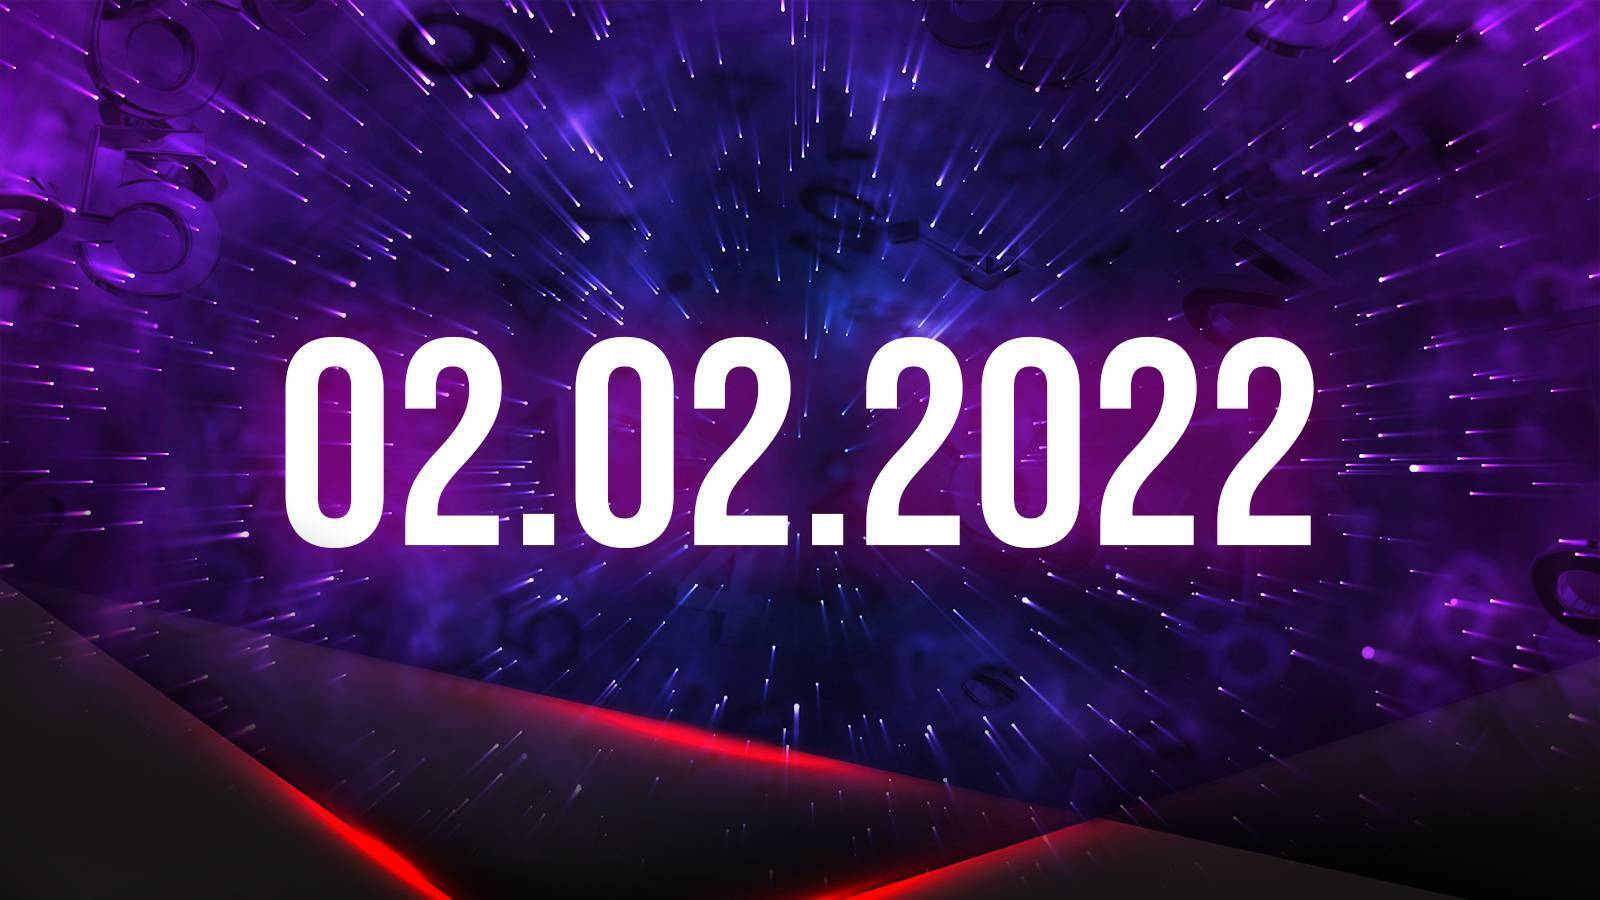 При этом первая зеркальная дата - 02.02.2022. 